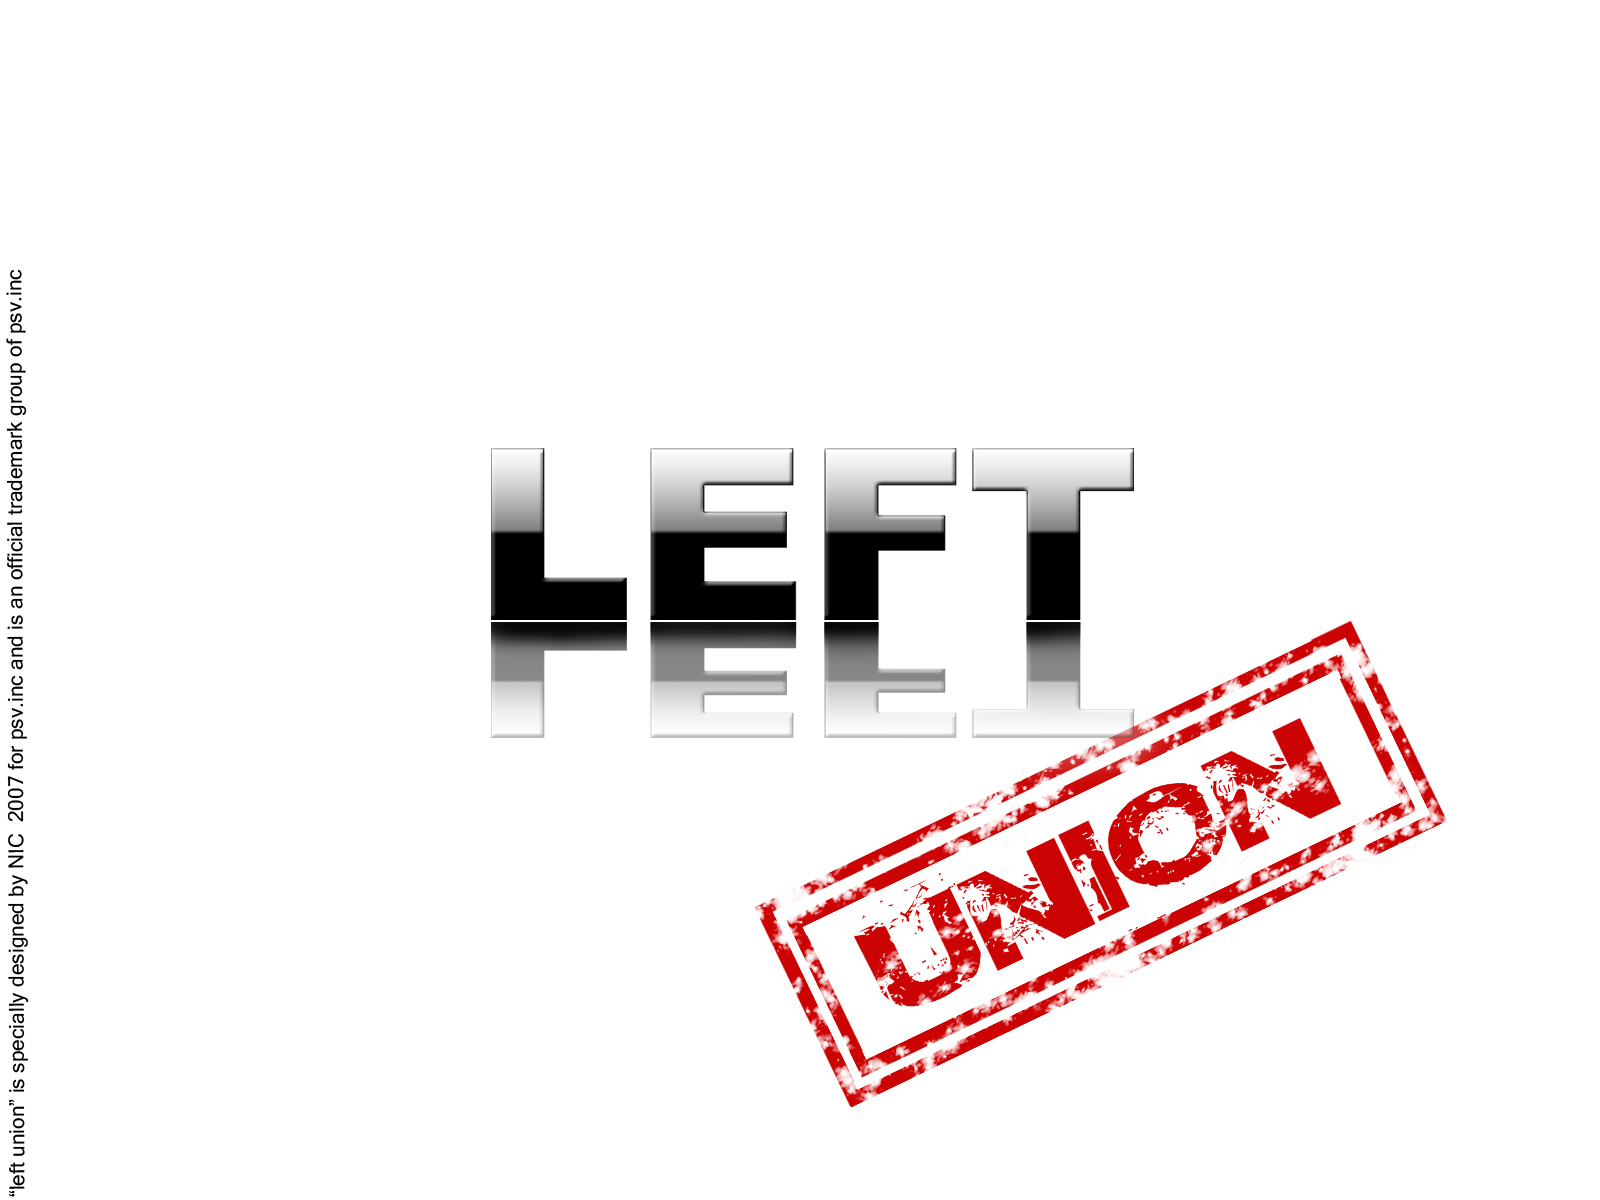 Left Union Of ECE